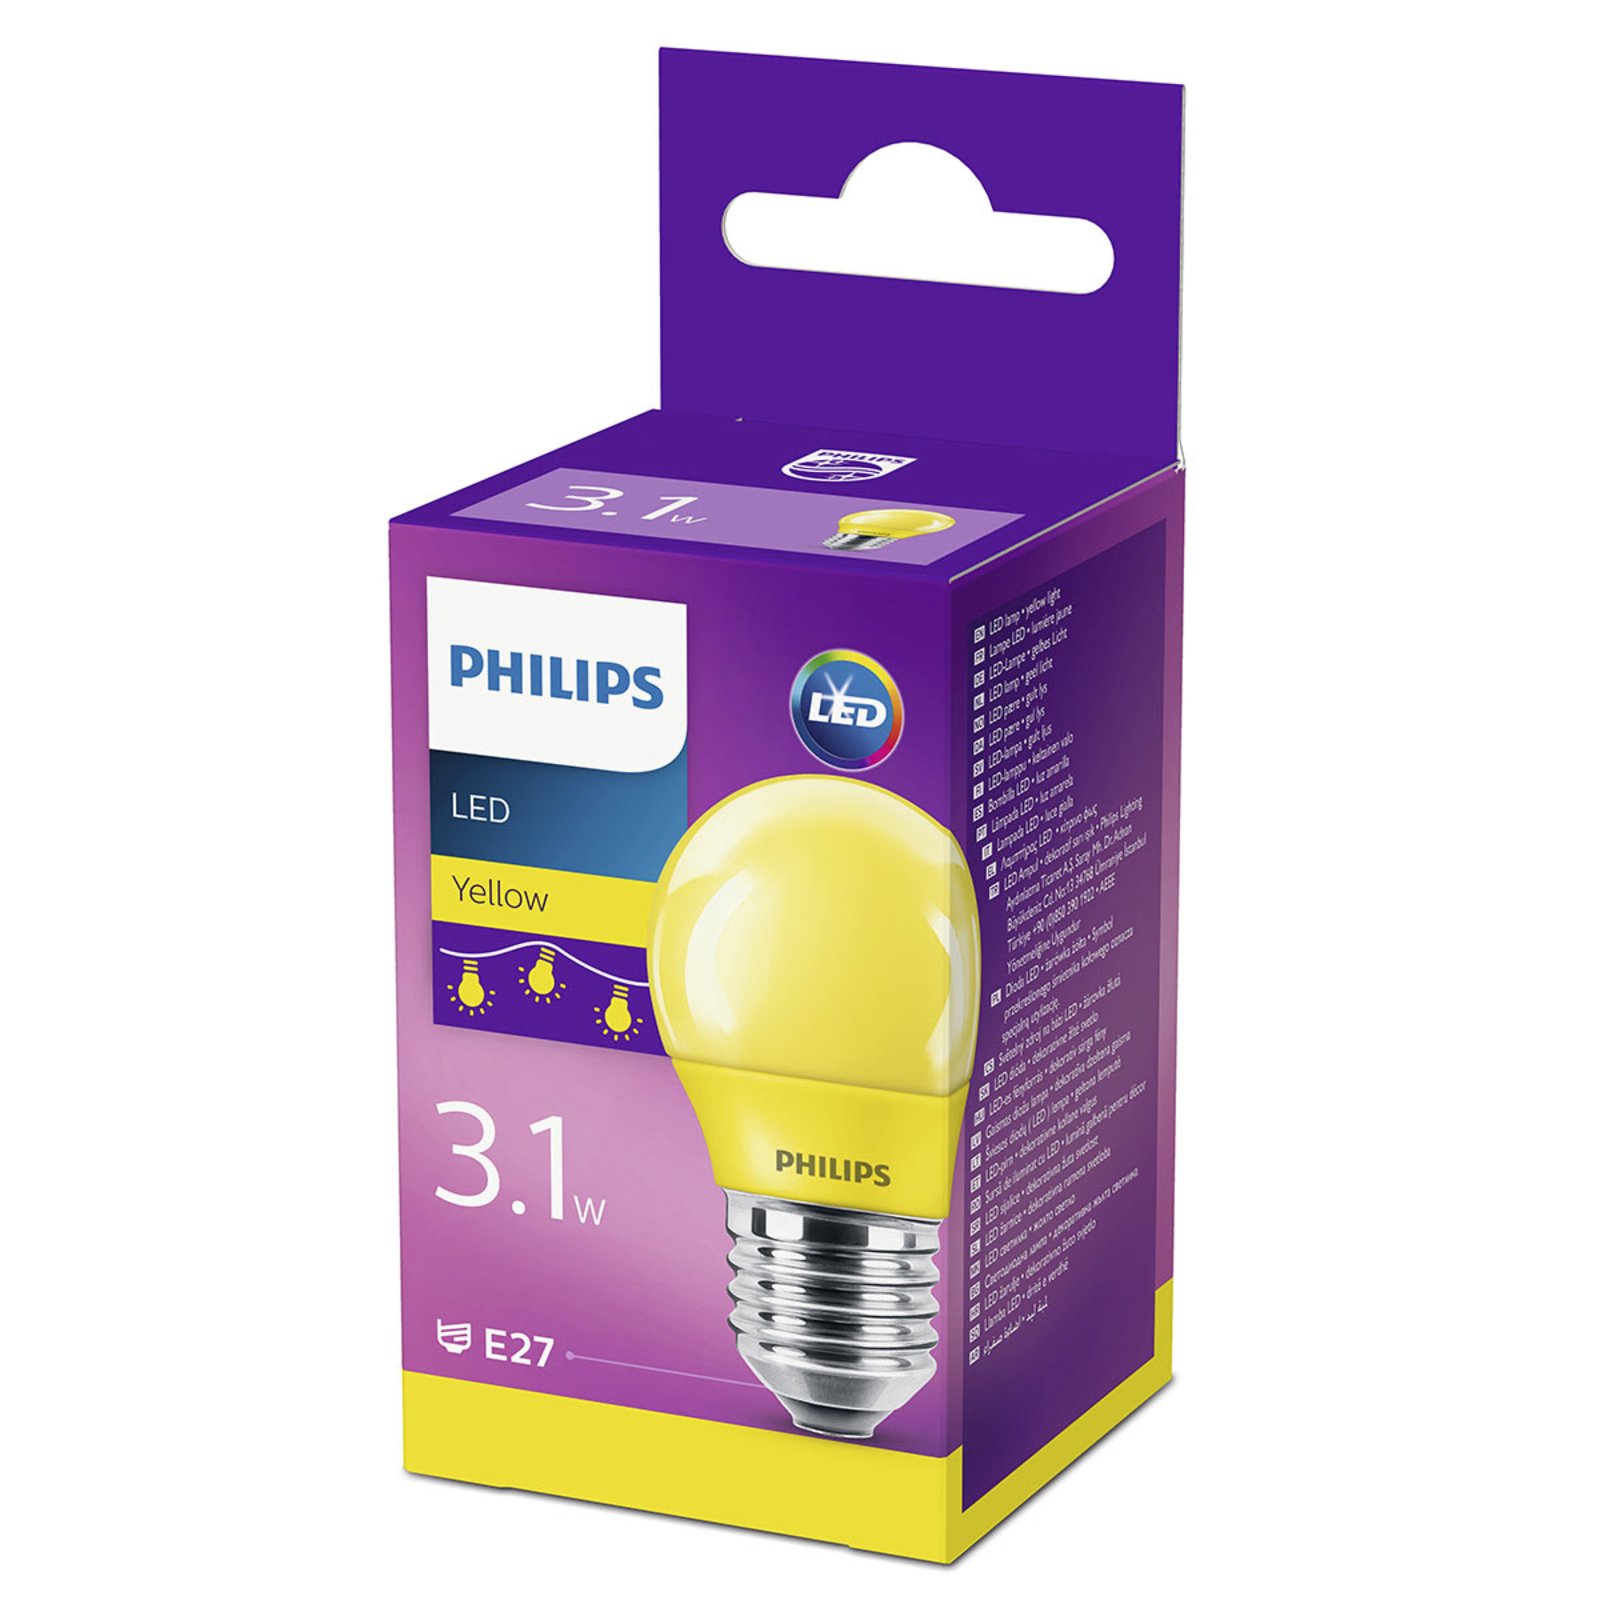 E27 P45 LED lámpa 3,1 W, sárga